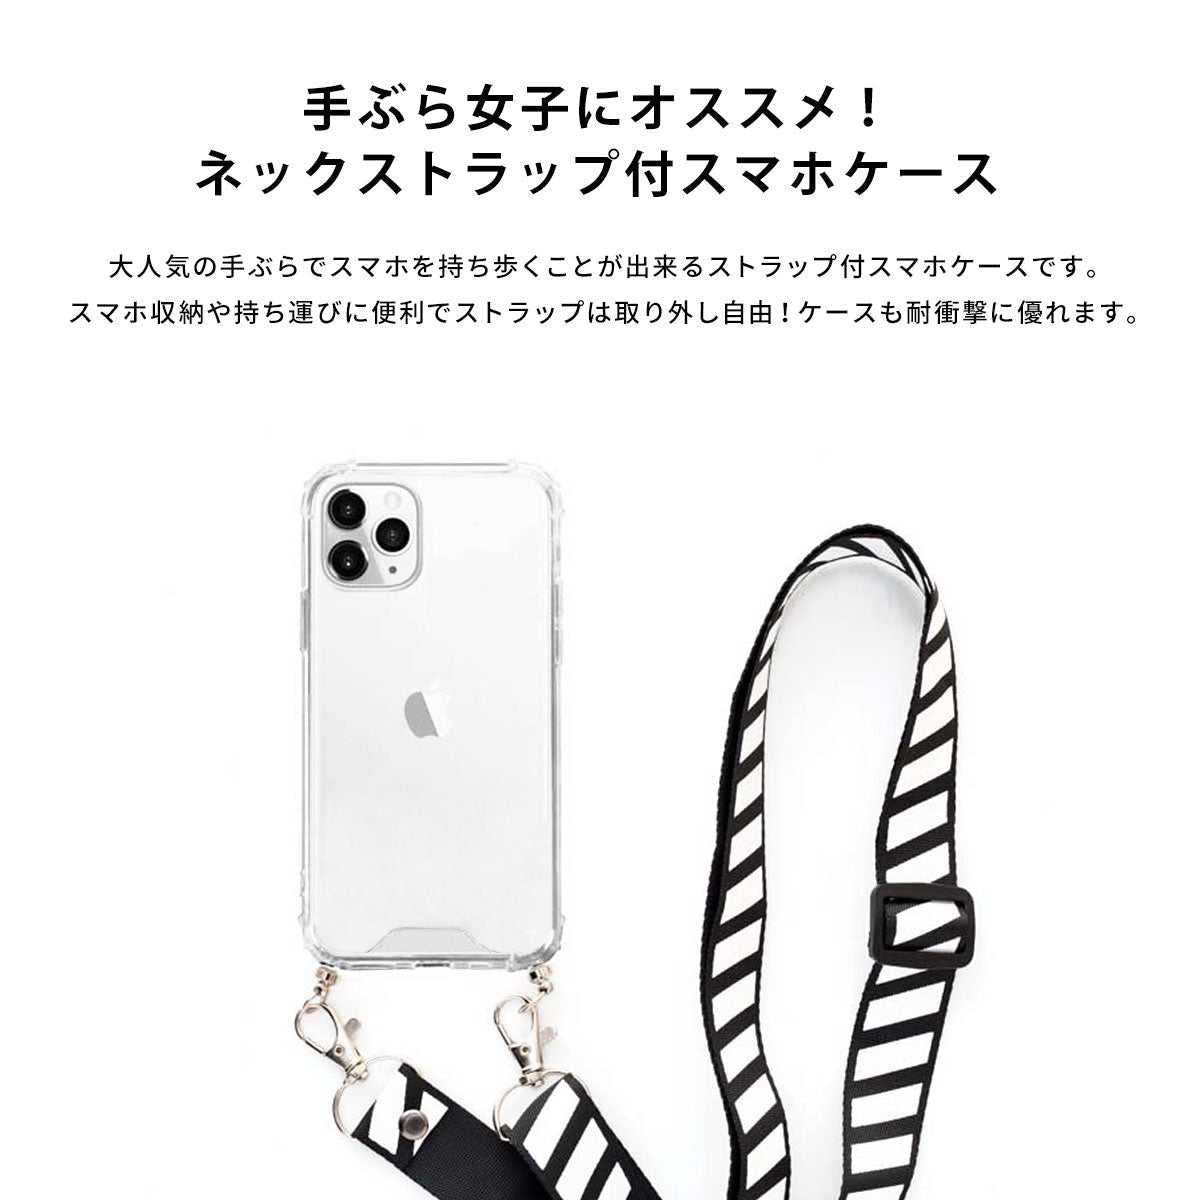 【手ぶら女子に】ネックストラップ スマホケース  iPhone13 iPone12 かわいい おしゃれ  ネックストラップ付き 風鈴 夏 名入れ